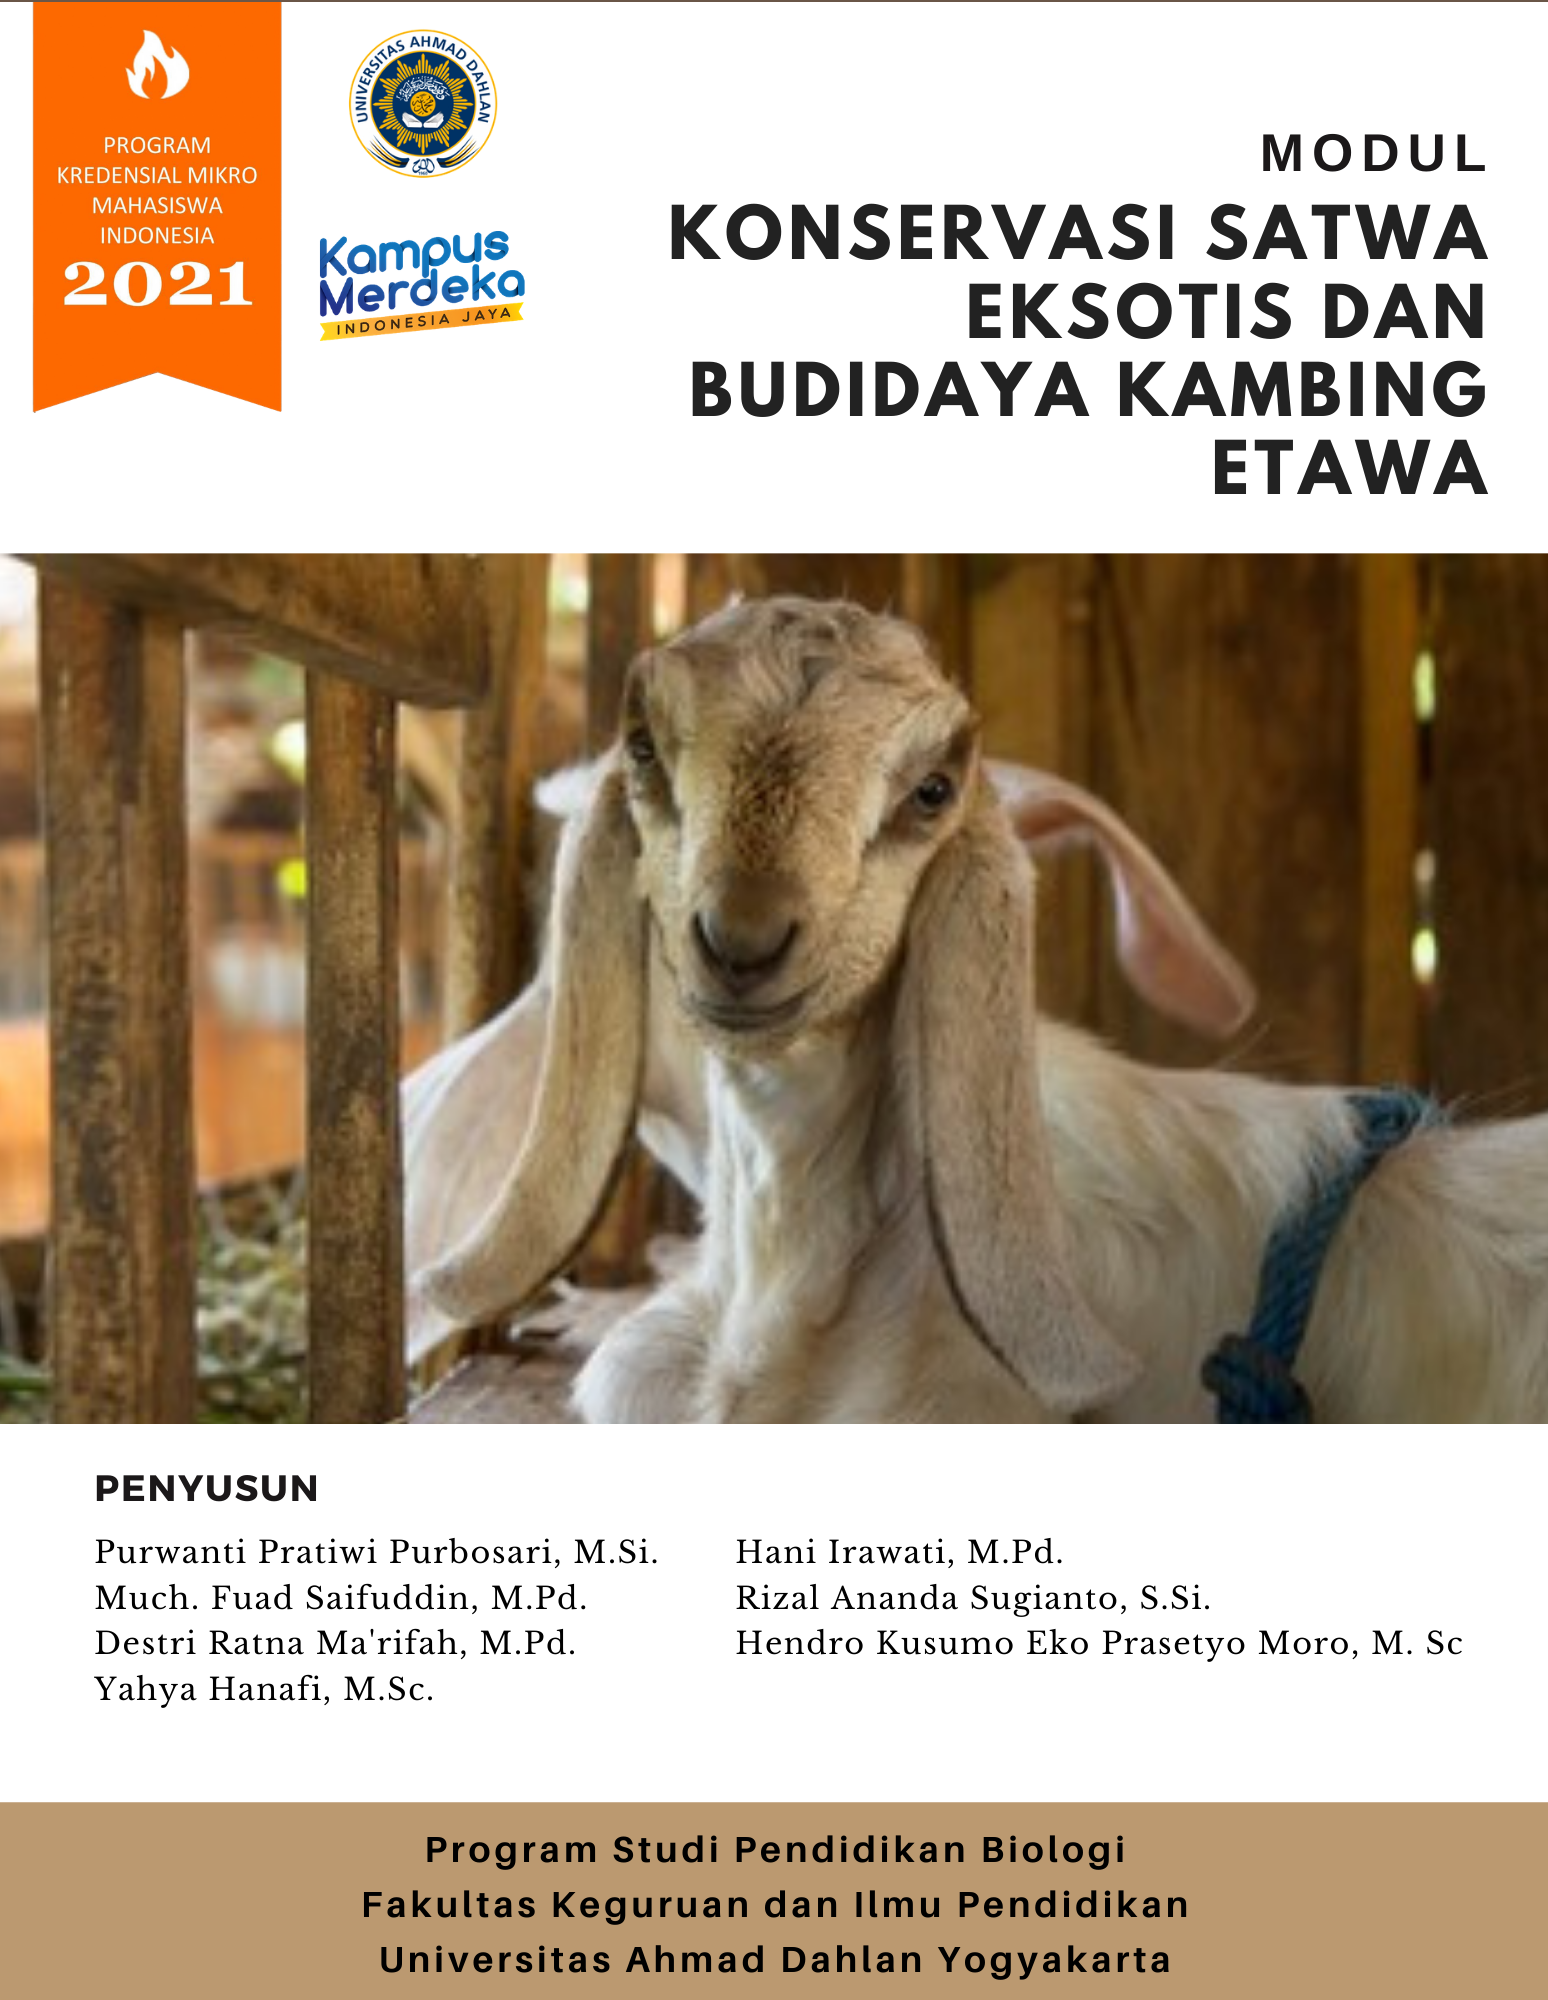 Konservasi Satwa Eksotis dan Budidaya Kambing Etawa